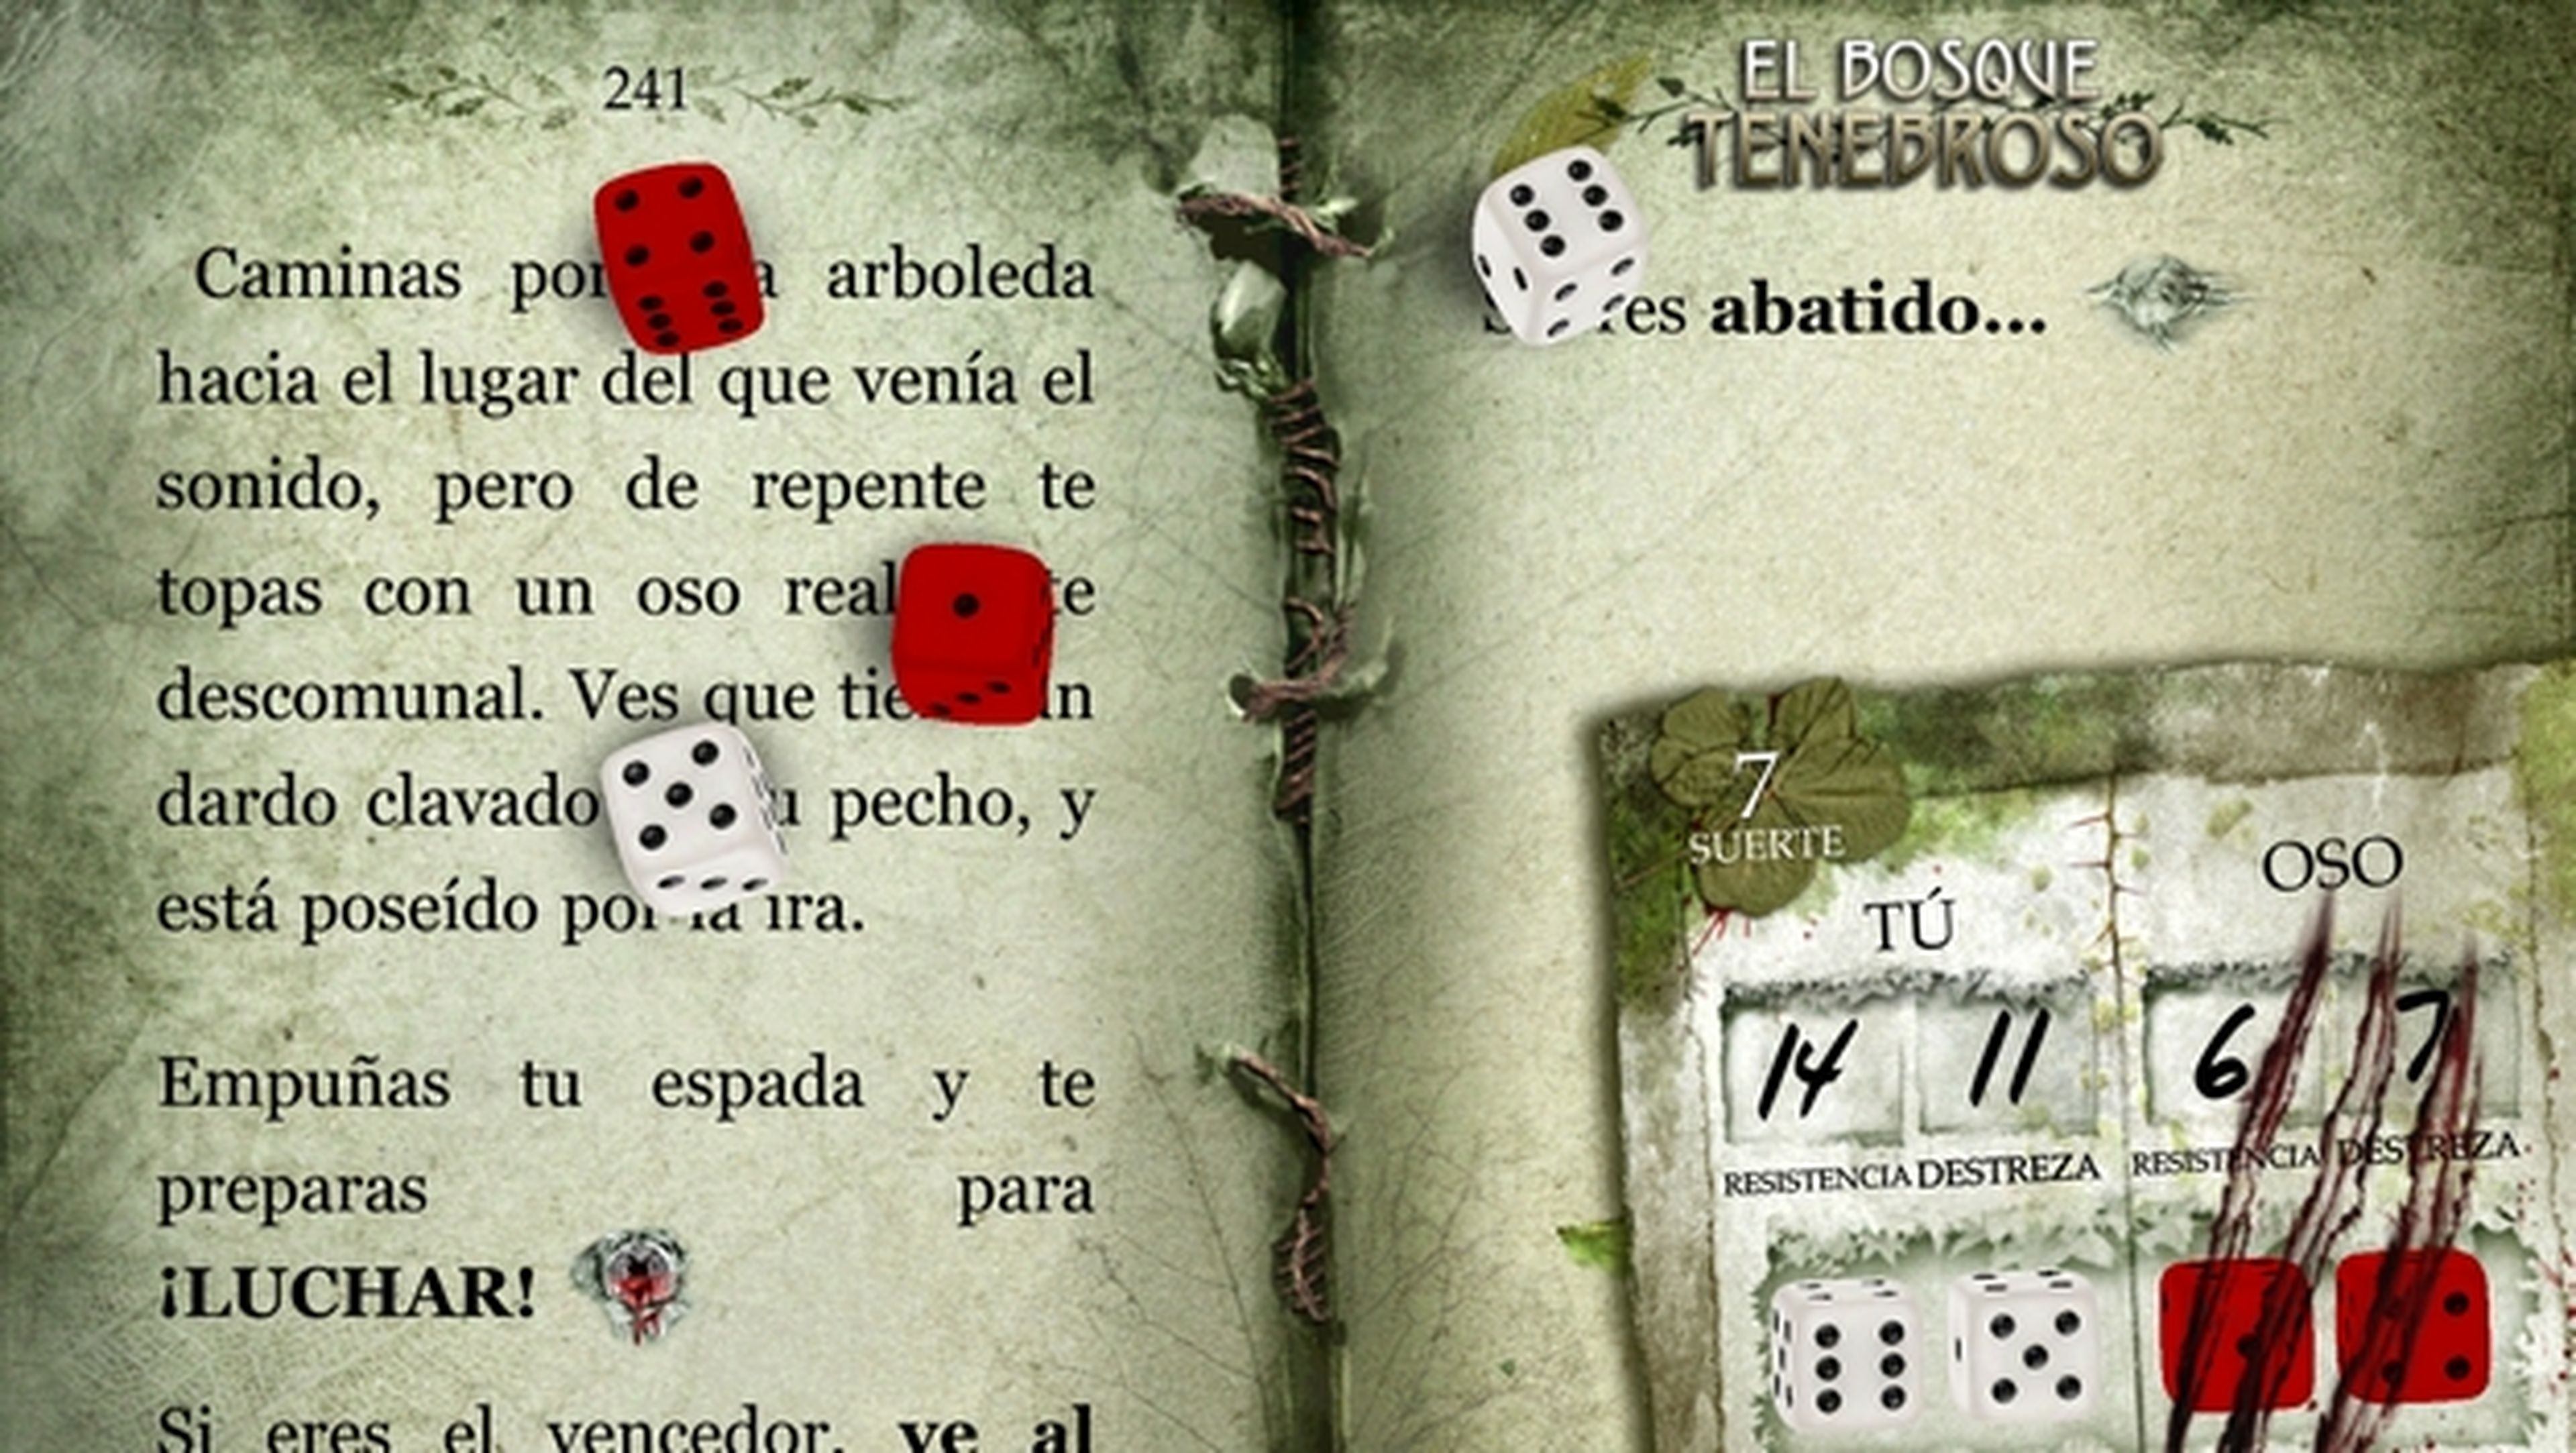 Los librojuegos de la saga Fighting fantasy, como El Bosque Tenebroso, ya disponibles en español, como una app para iOS y Android